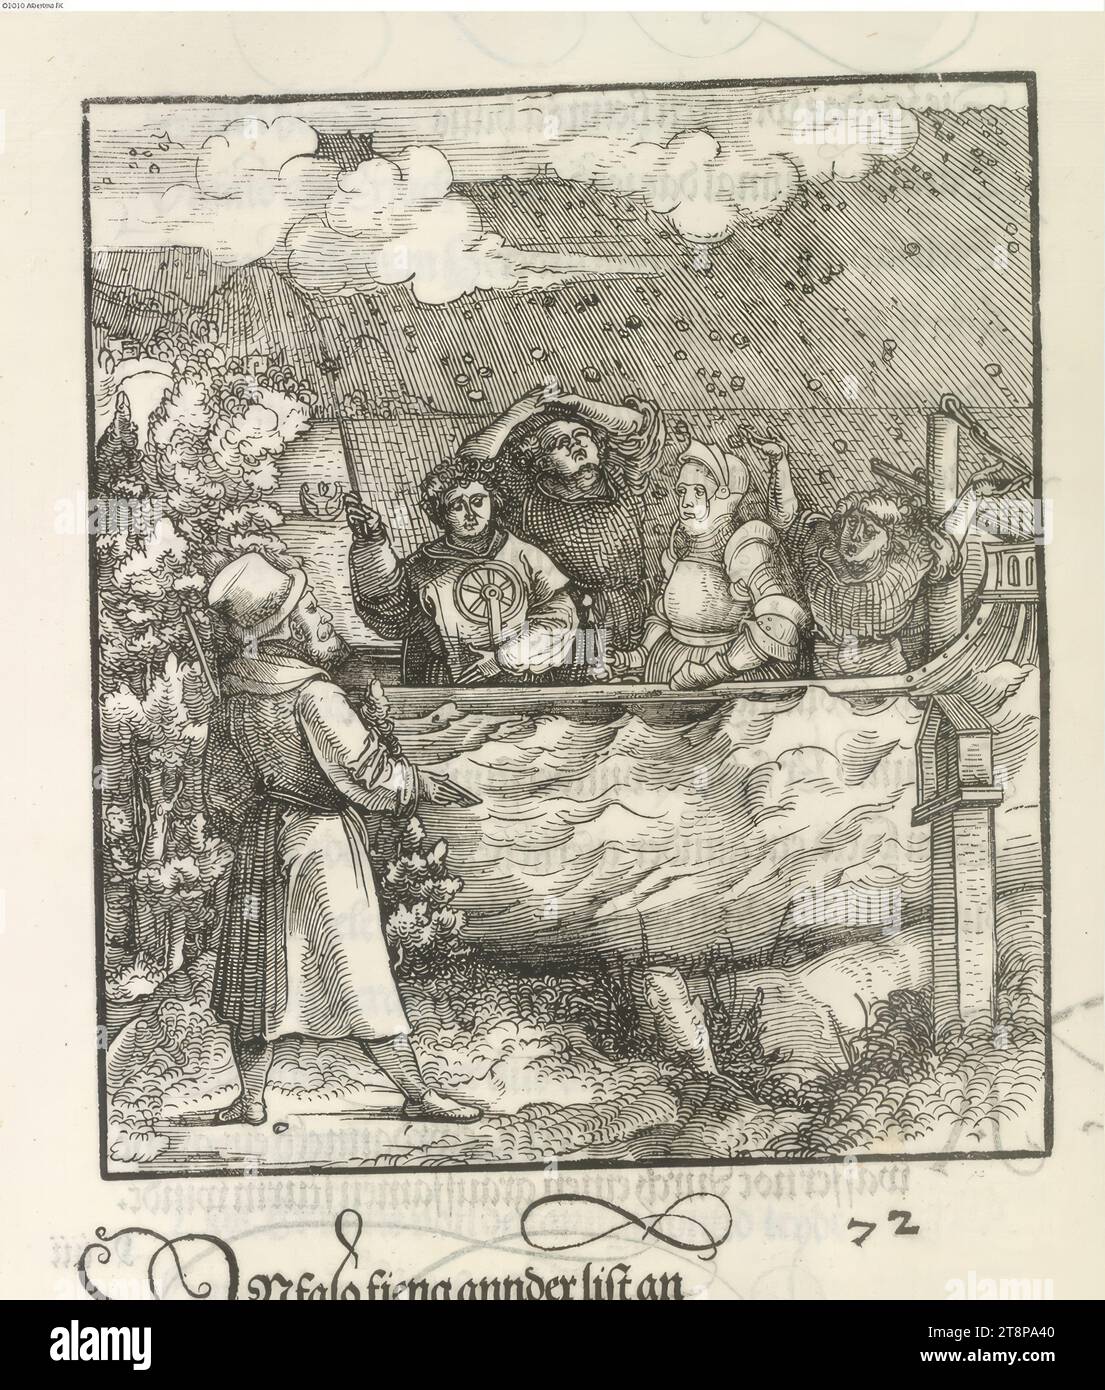 Theuerdank : image 72 - Une tempête de grêle amène Theuerdank et les marins qui l'accompagnent dans le bateau à la «détresse de l'eau», le «Theuerdank» de l'empereur Maximilien Ier, Hans Schäufelin (Rhin supérieur vers 1482/83 - 1539/40 Nördlingen), Leonhard Beck (Augsburg vers 1475/80 - 1542 Augsburg), 1517, impression, gravure sur bois, feuille: 34,7 x 24,3 cm Banque D'Images